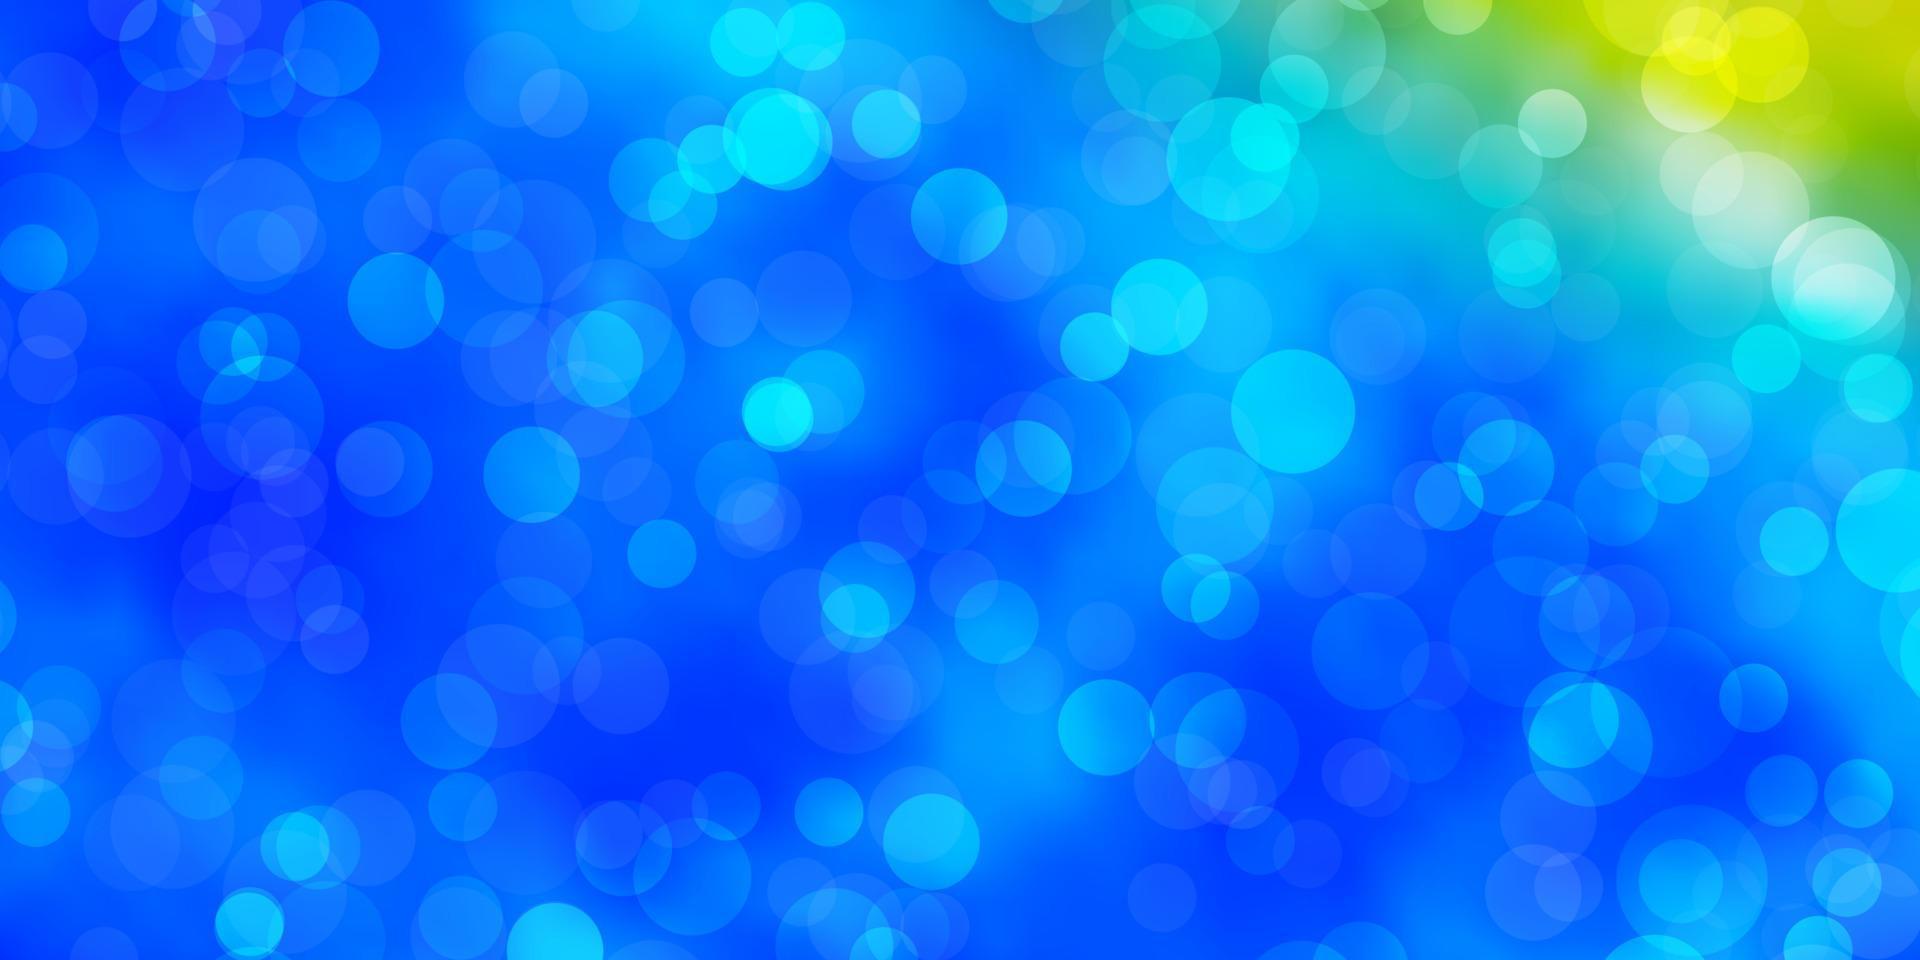 ljusblå, gul vektor bakgrund med cirklar.